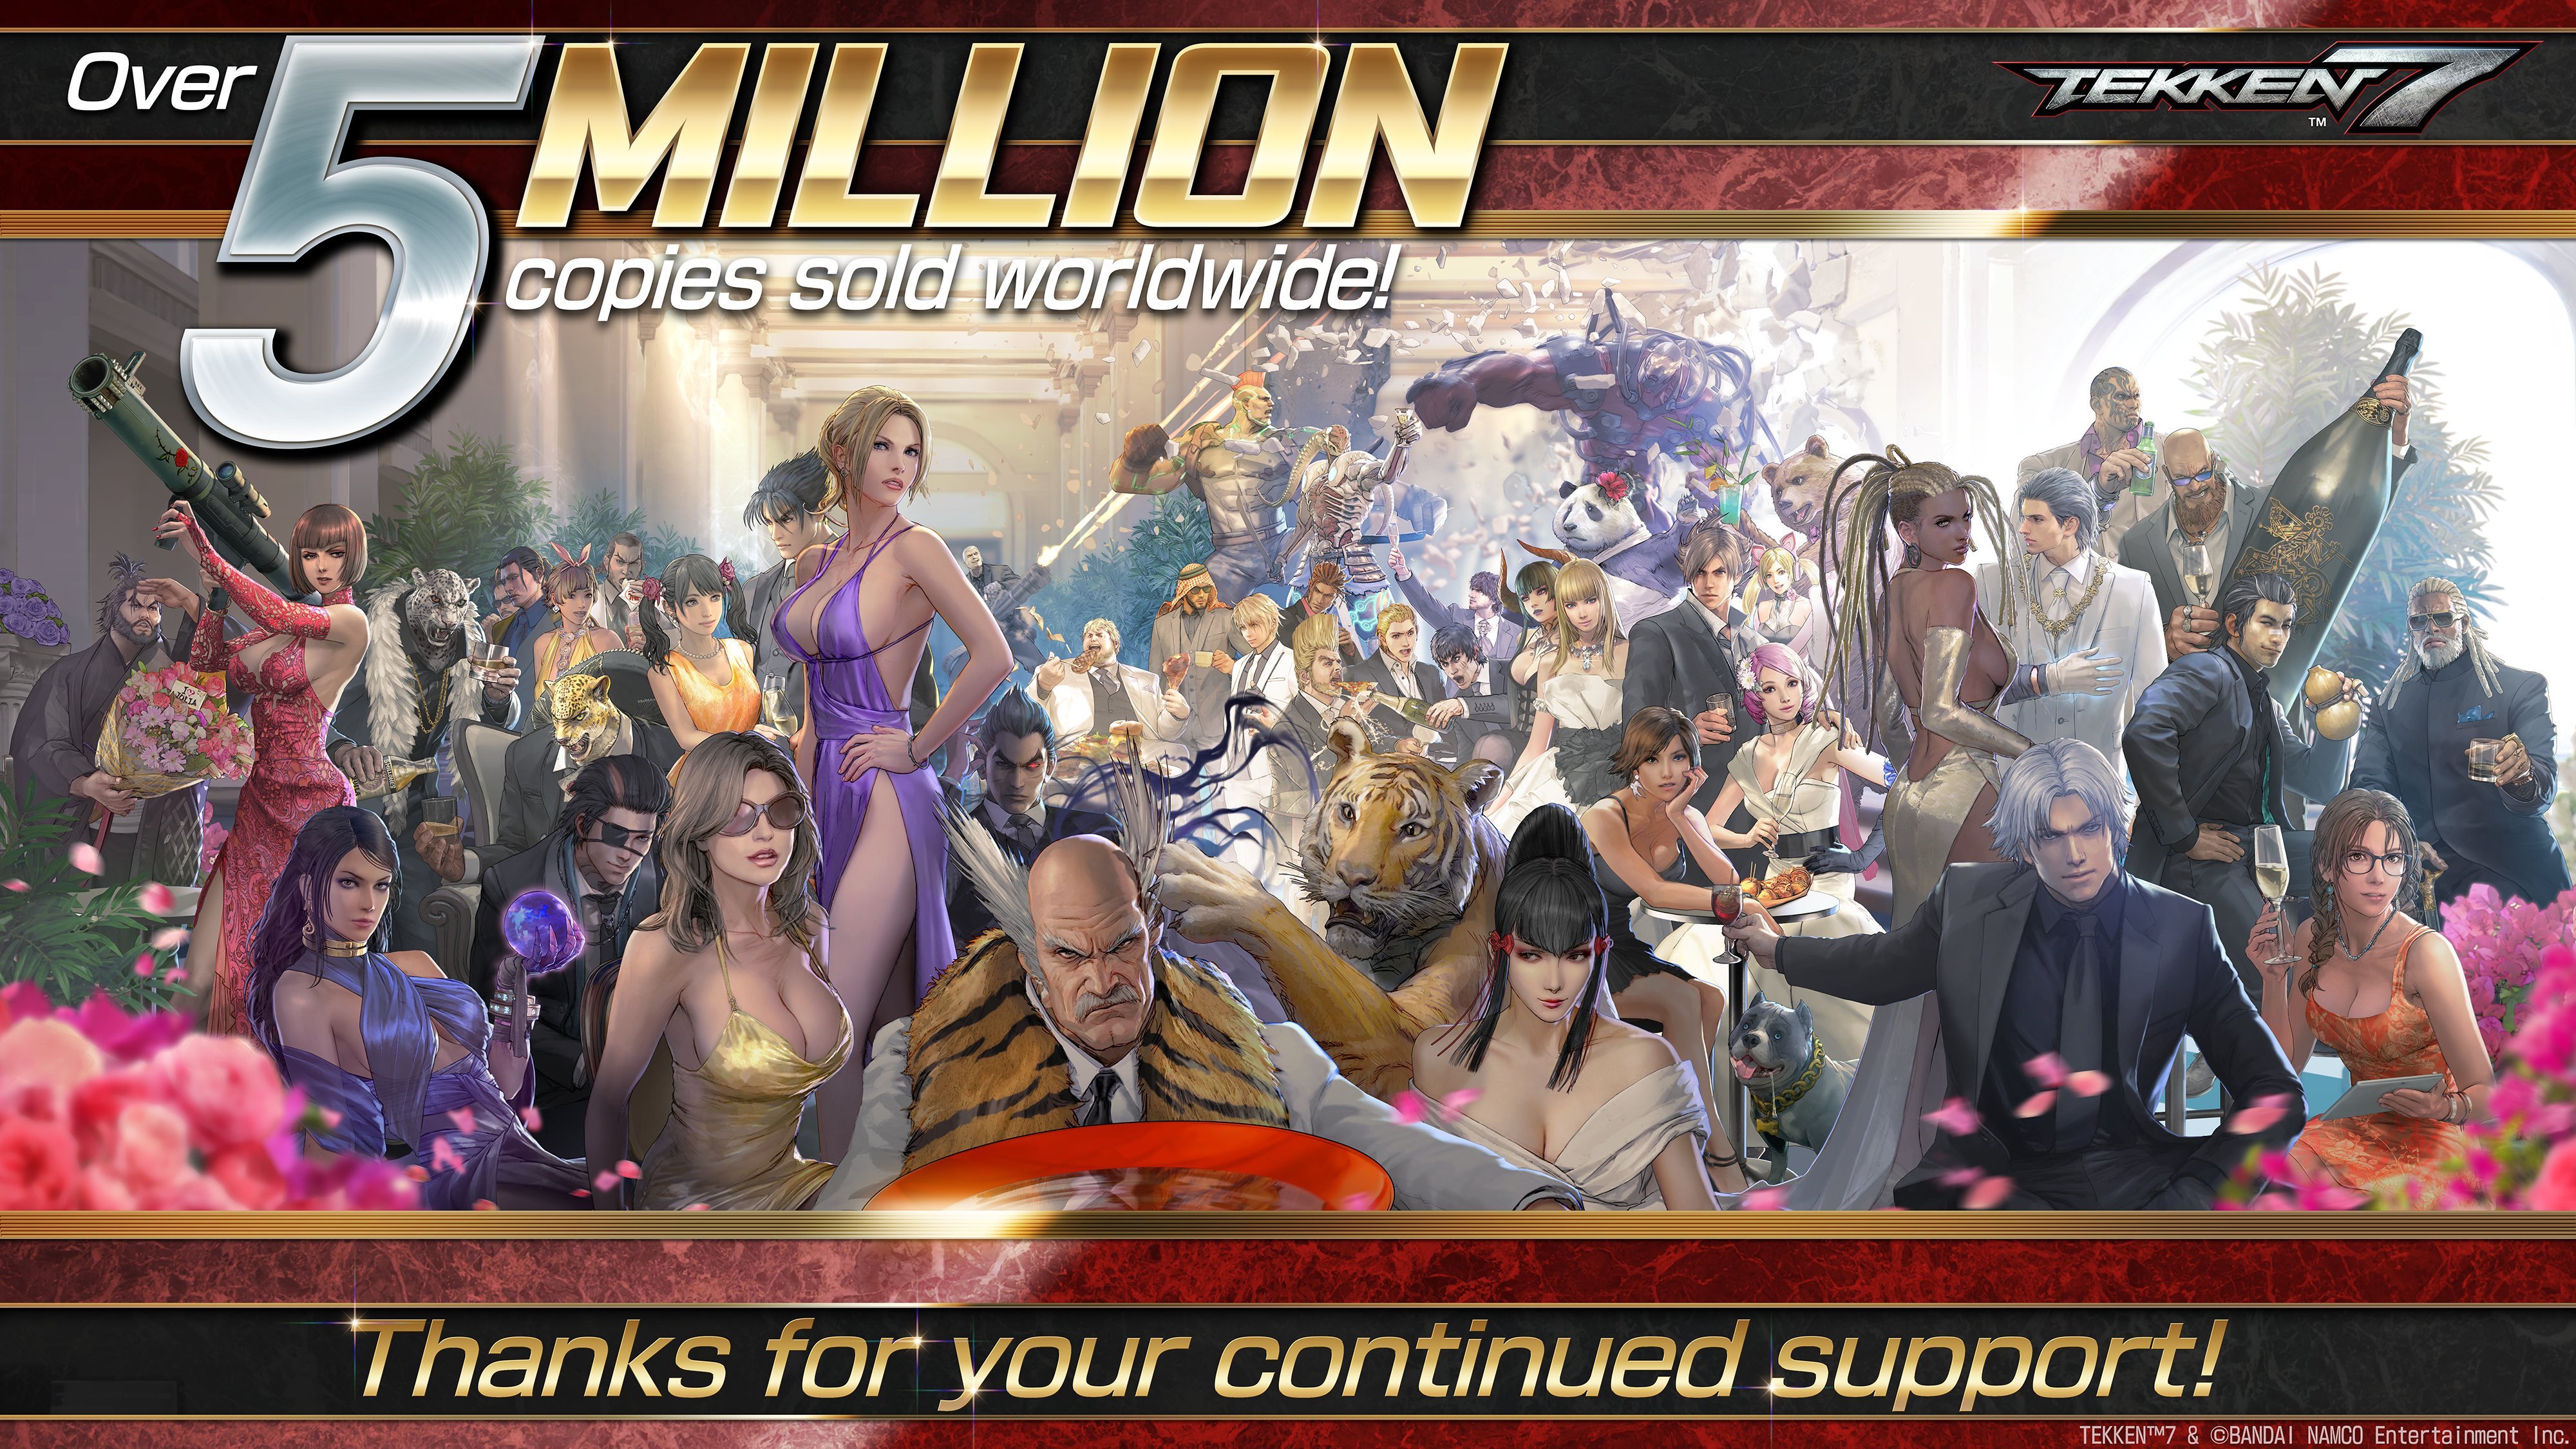 tekken 7 4 million copies - Over Tekken copies sold worldwide! Thanks for your continued support!